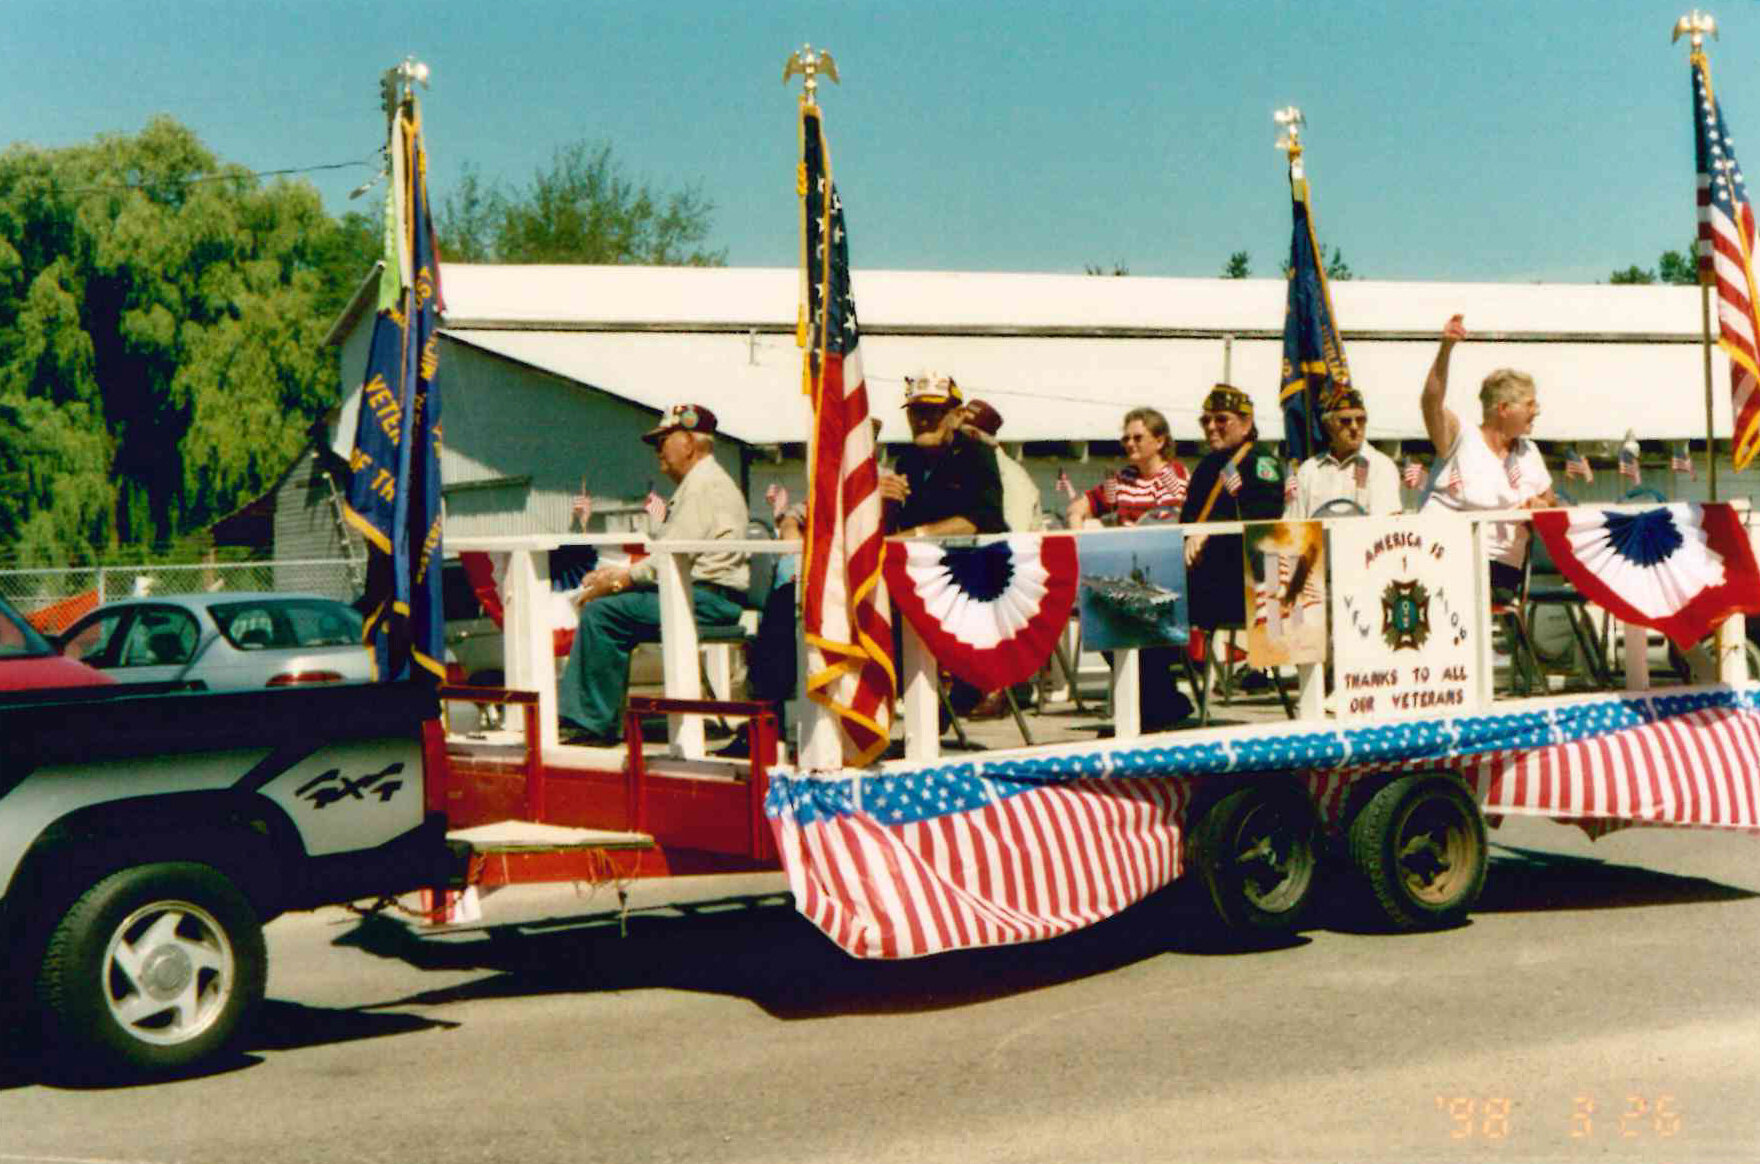 VFW members in parade